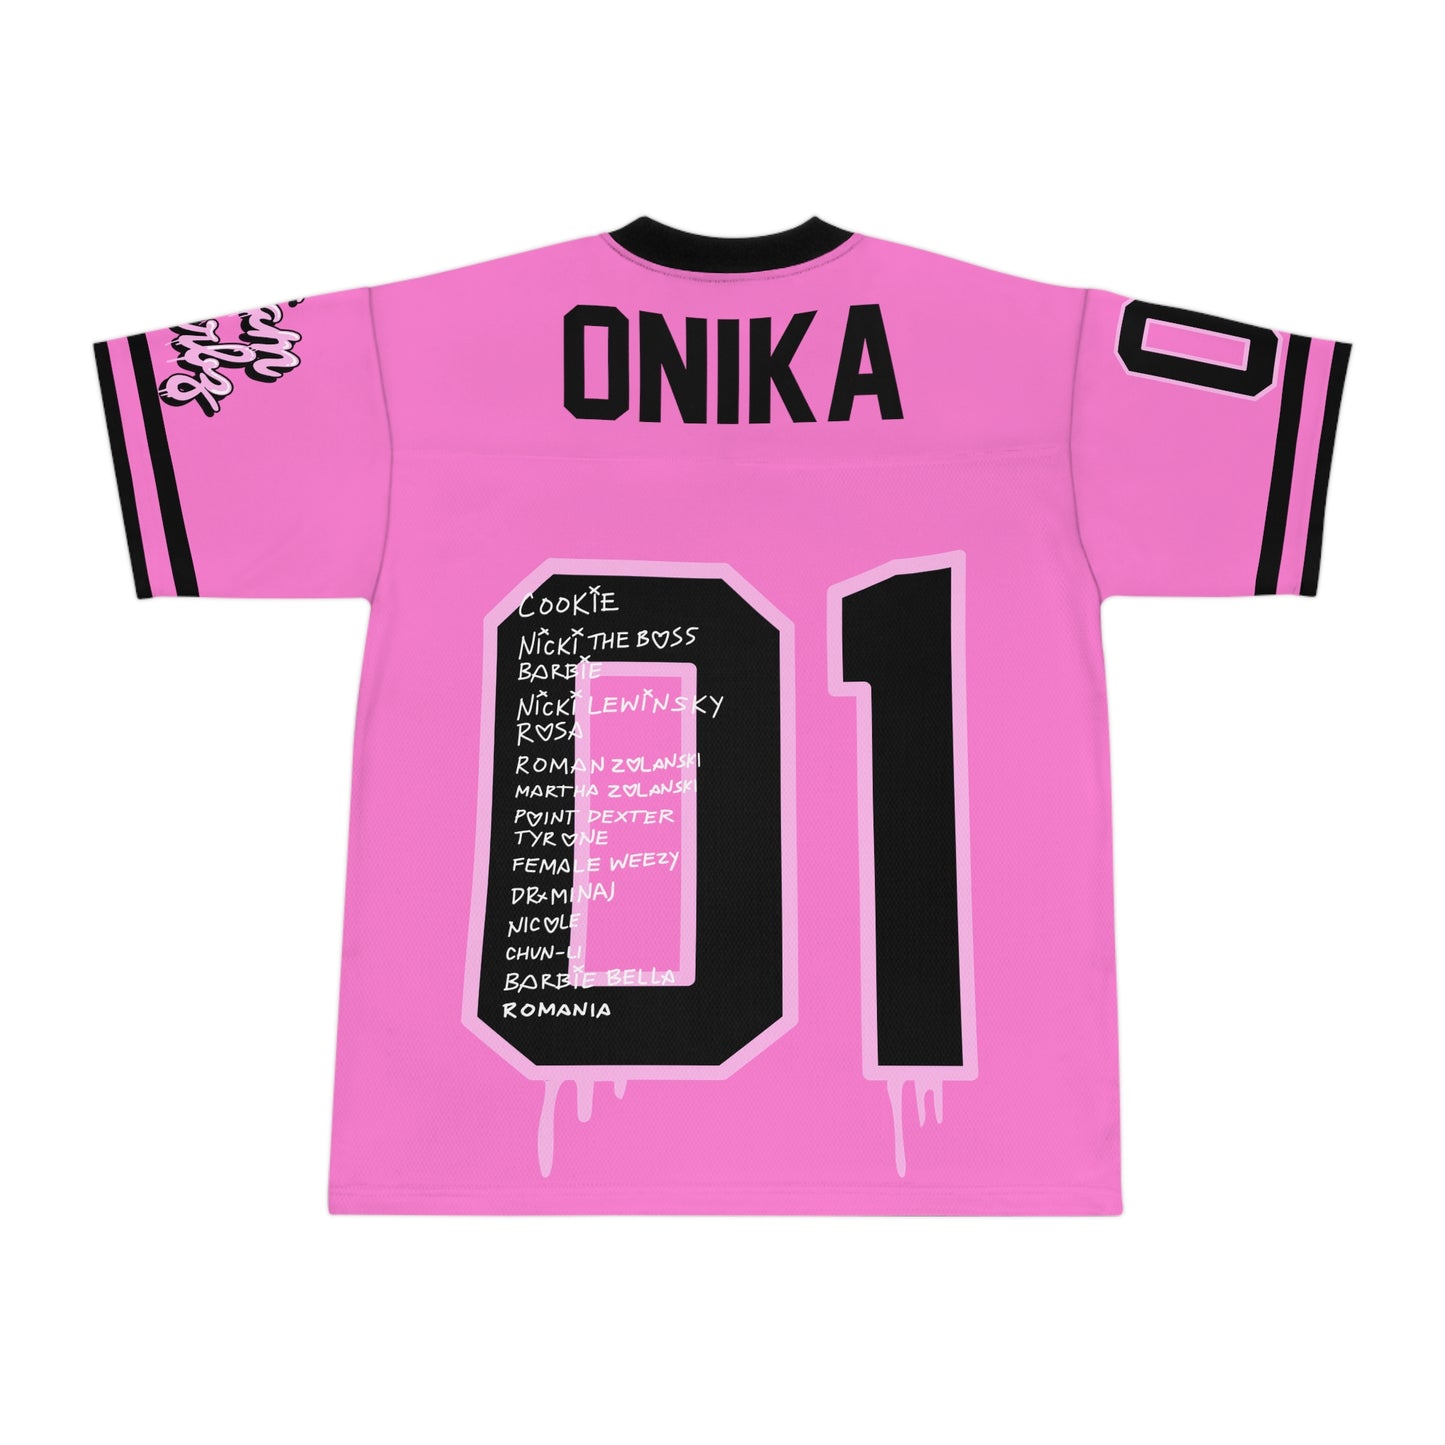 Nicki Minaj Jersey | Nicki Minaj Fan Merch | Nicki Minaj Barbz Shirt | Nicki Minaj Shirt | Nicki Minaj Merch